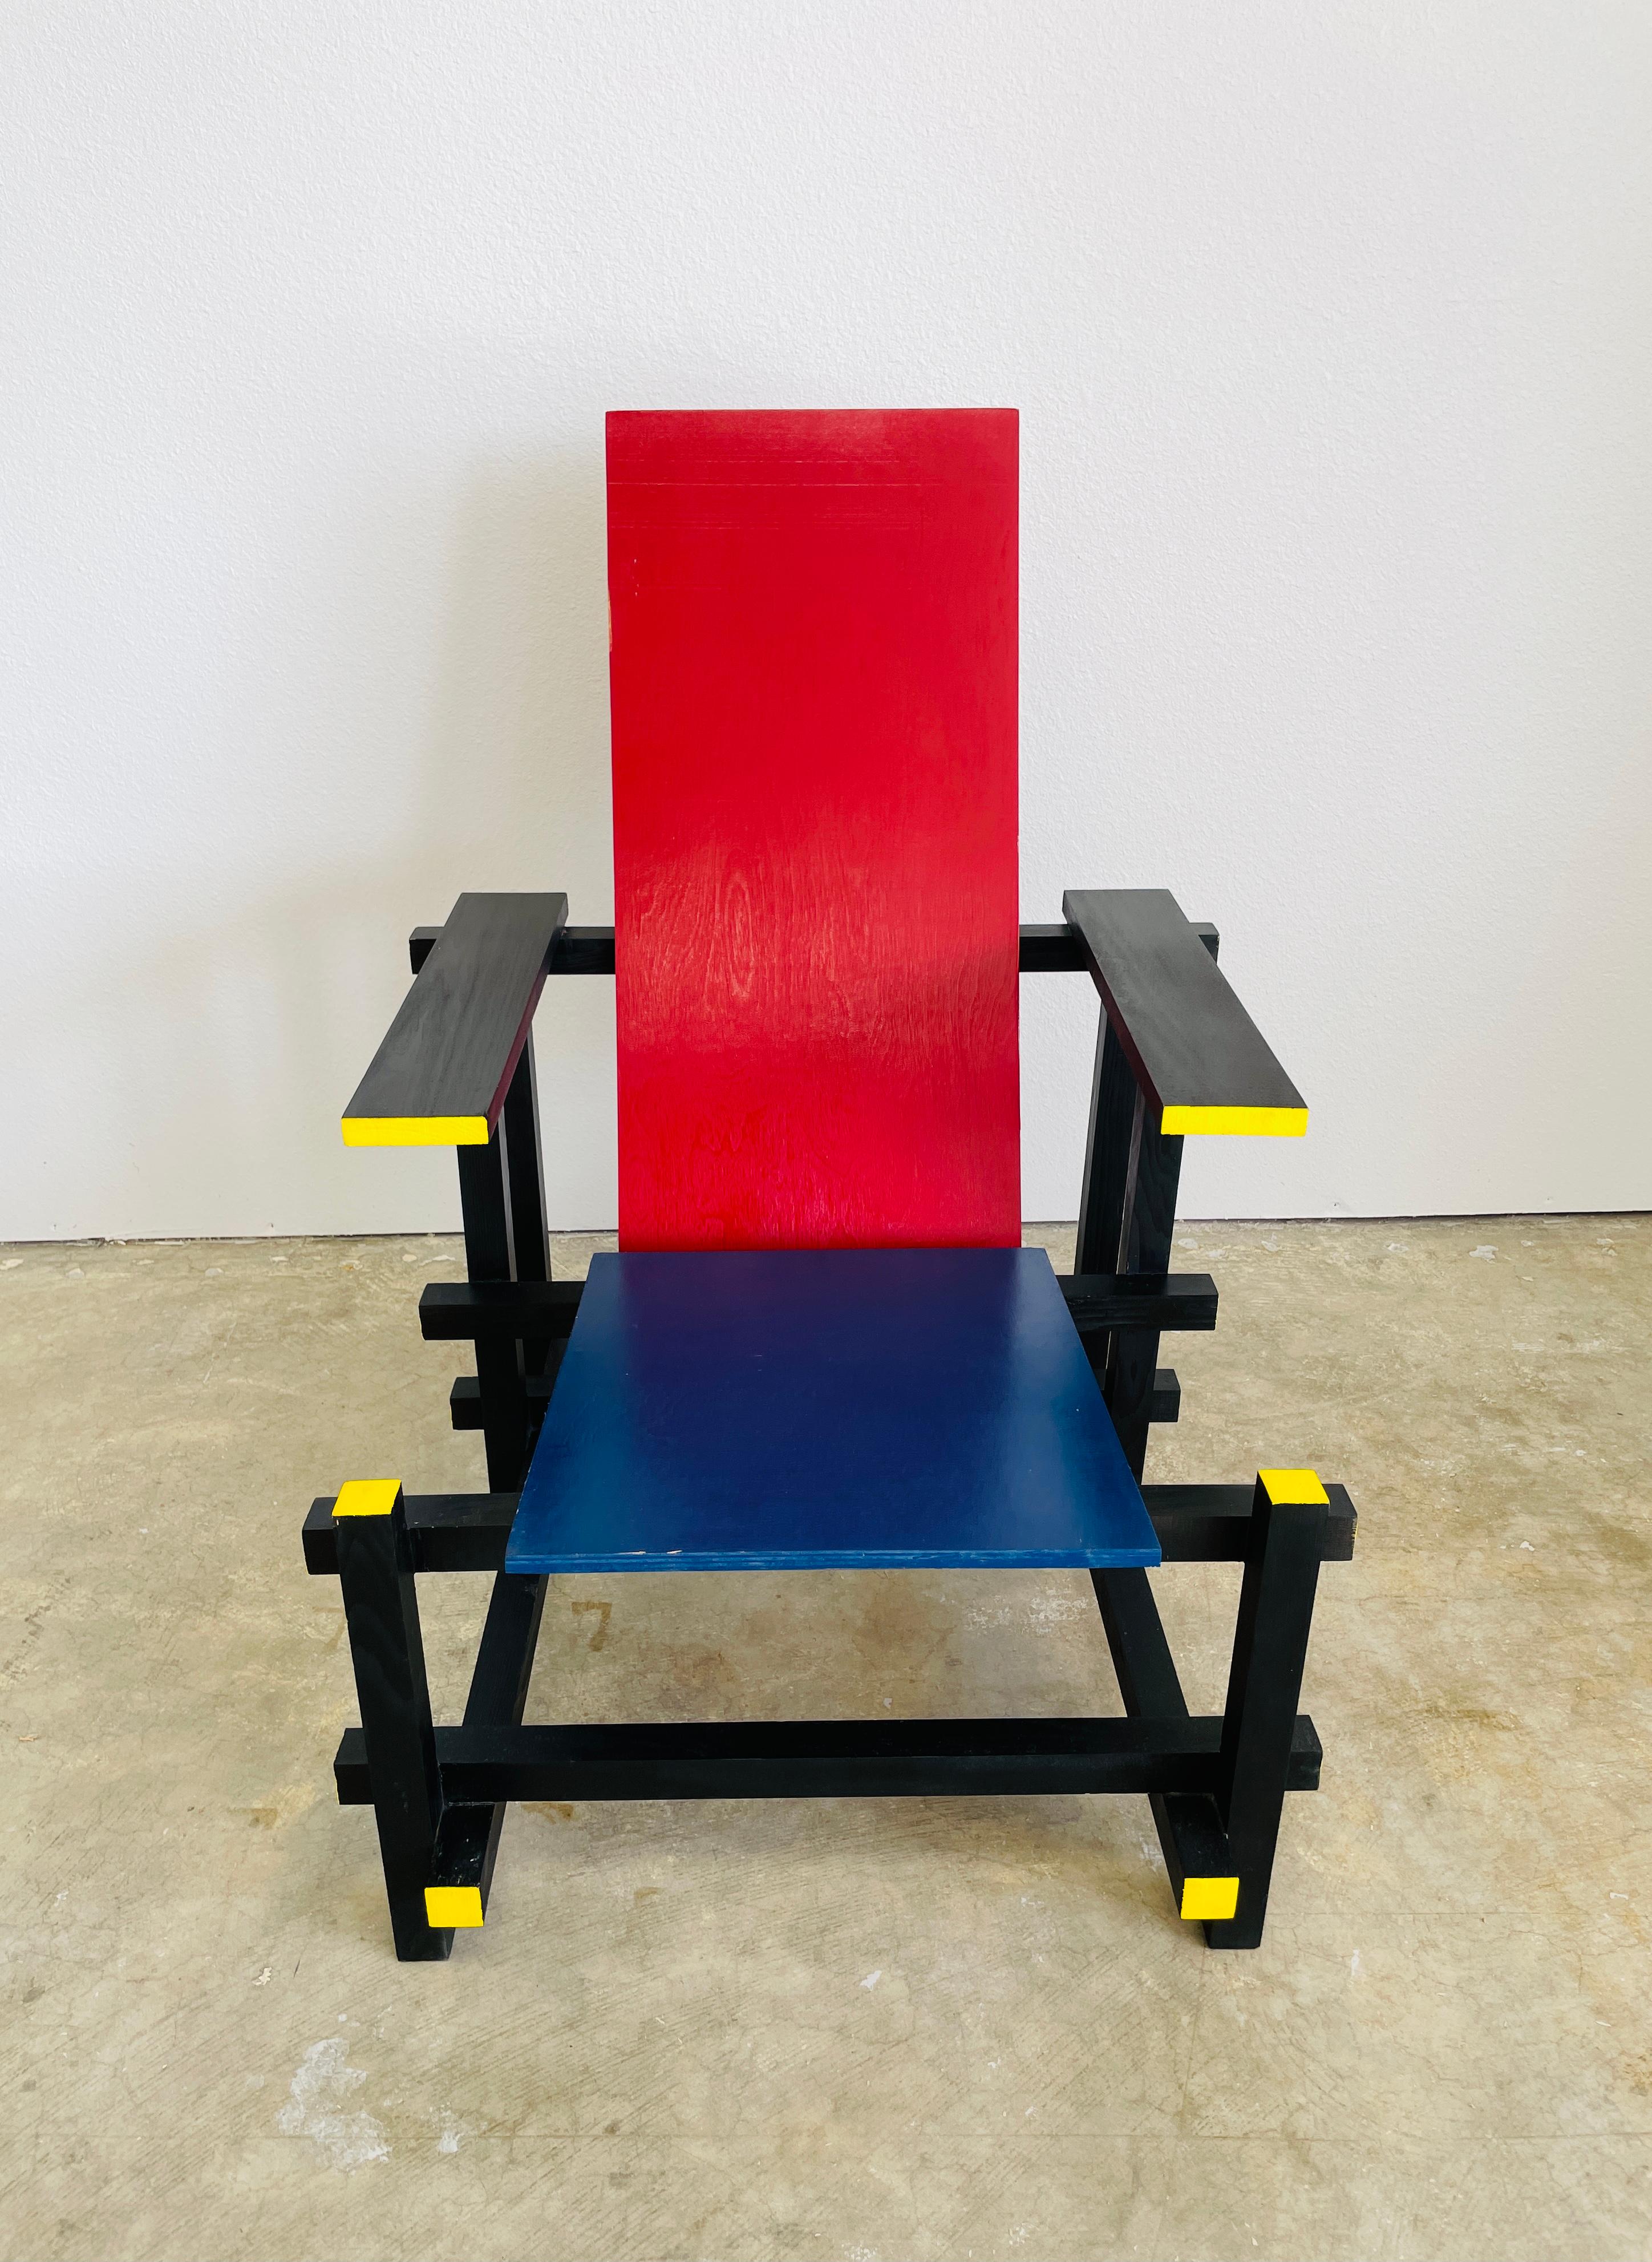 Vintage Gerrit Rietveld Stil inspiriert von Piet Mondrian Holz Stuhl.
Dies wurde von einem Architekten in Wichita Falls, Kansas, neu gestaltet
Unterzeichnet und datiert am 30.09.09

Mit seiner geometrischen Komposition und den Primärfarben ist der